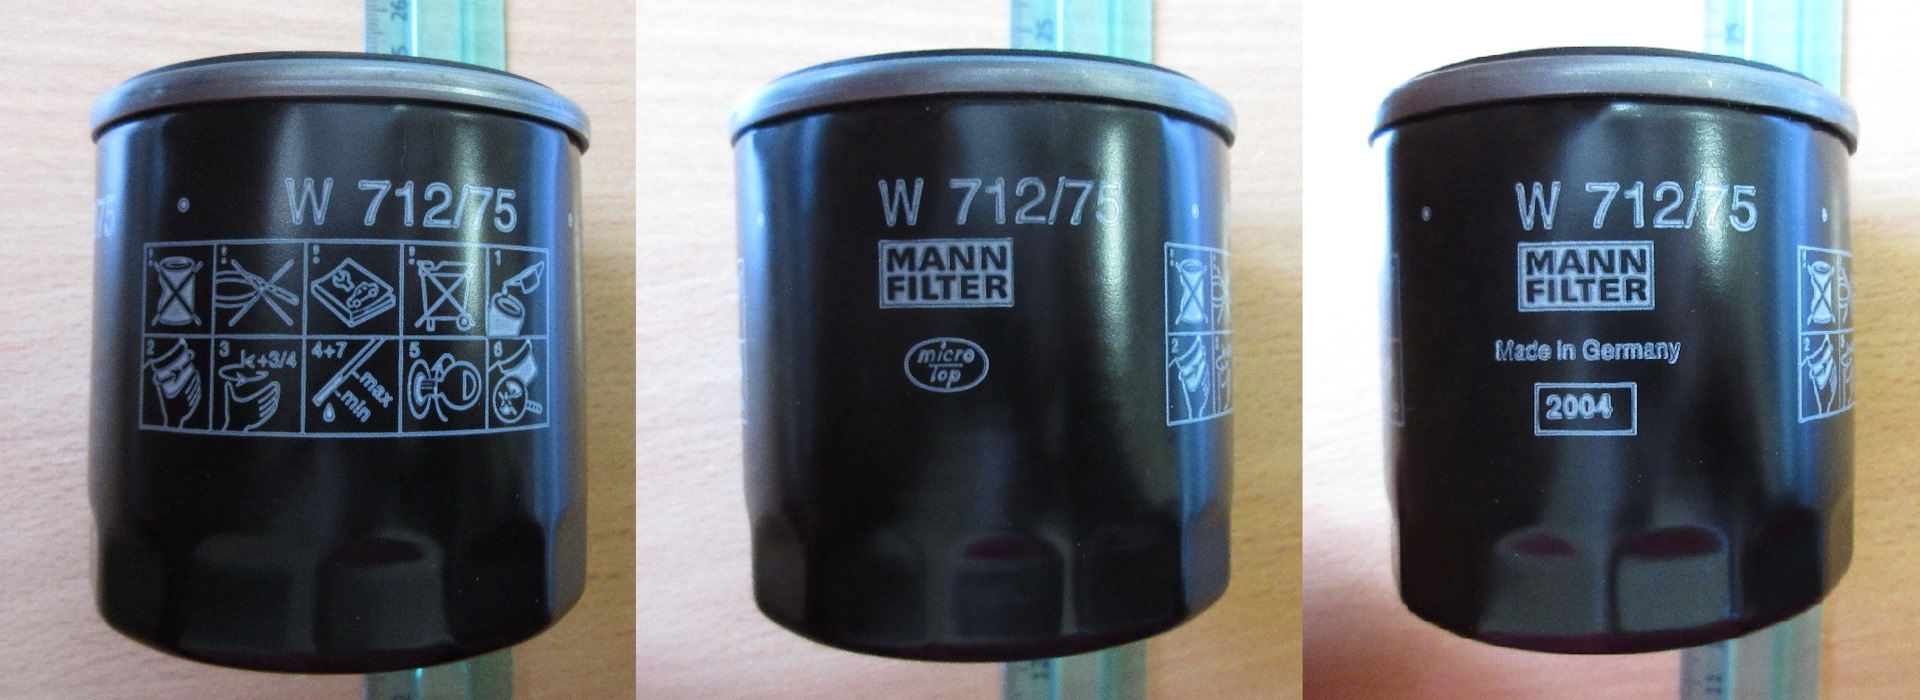 Как отличить фильтр манн. Mann w712/75. Mann-Filter w 712/75. Mann 712/75. Фильтр Mann Touareg.